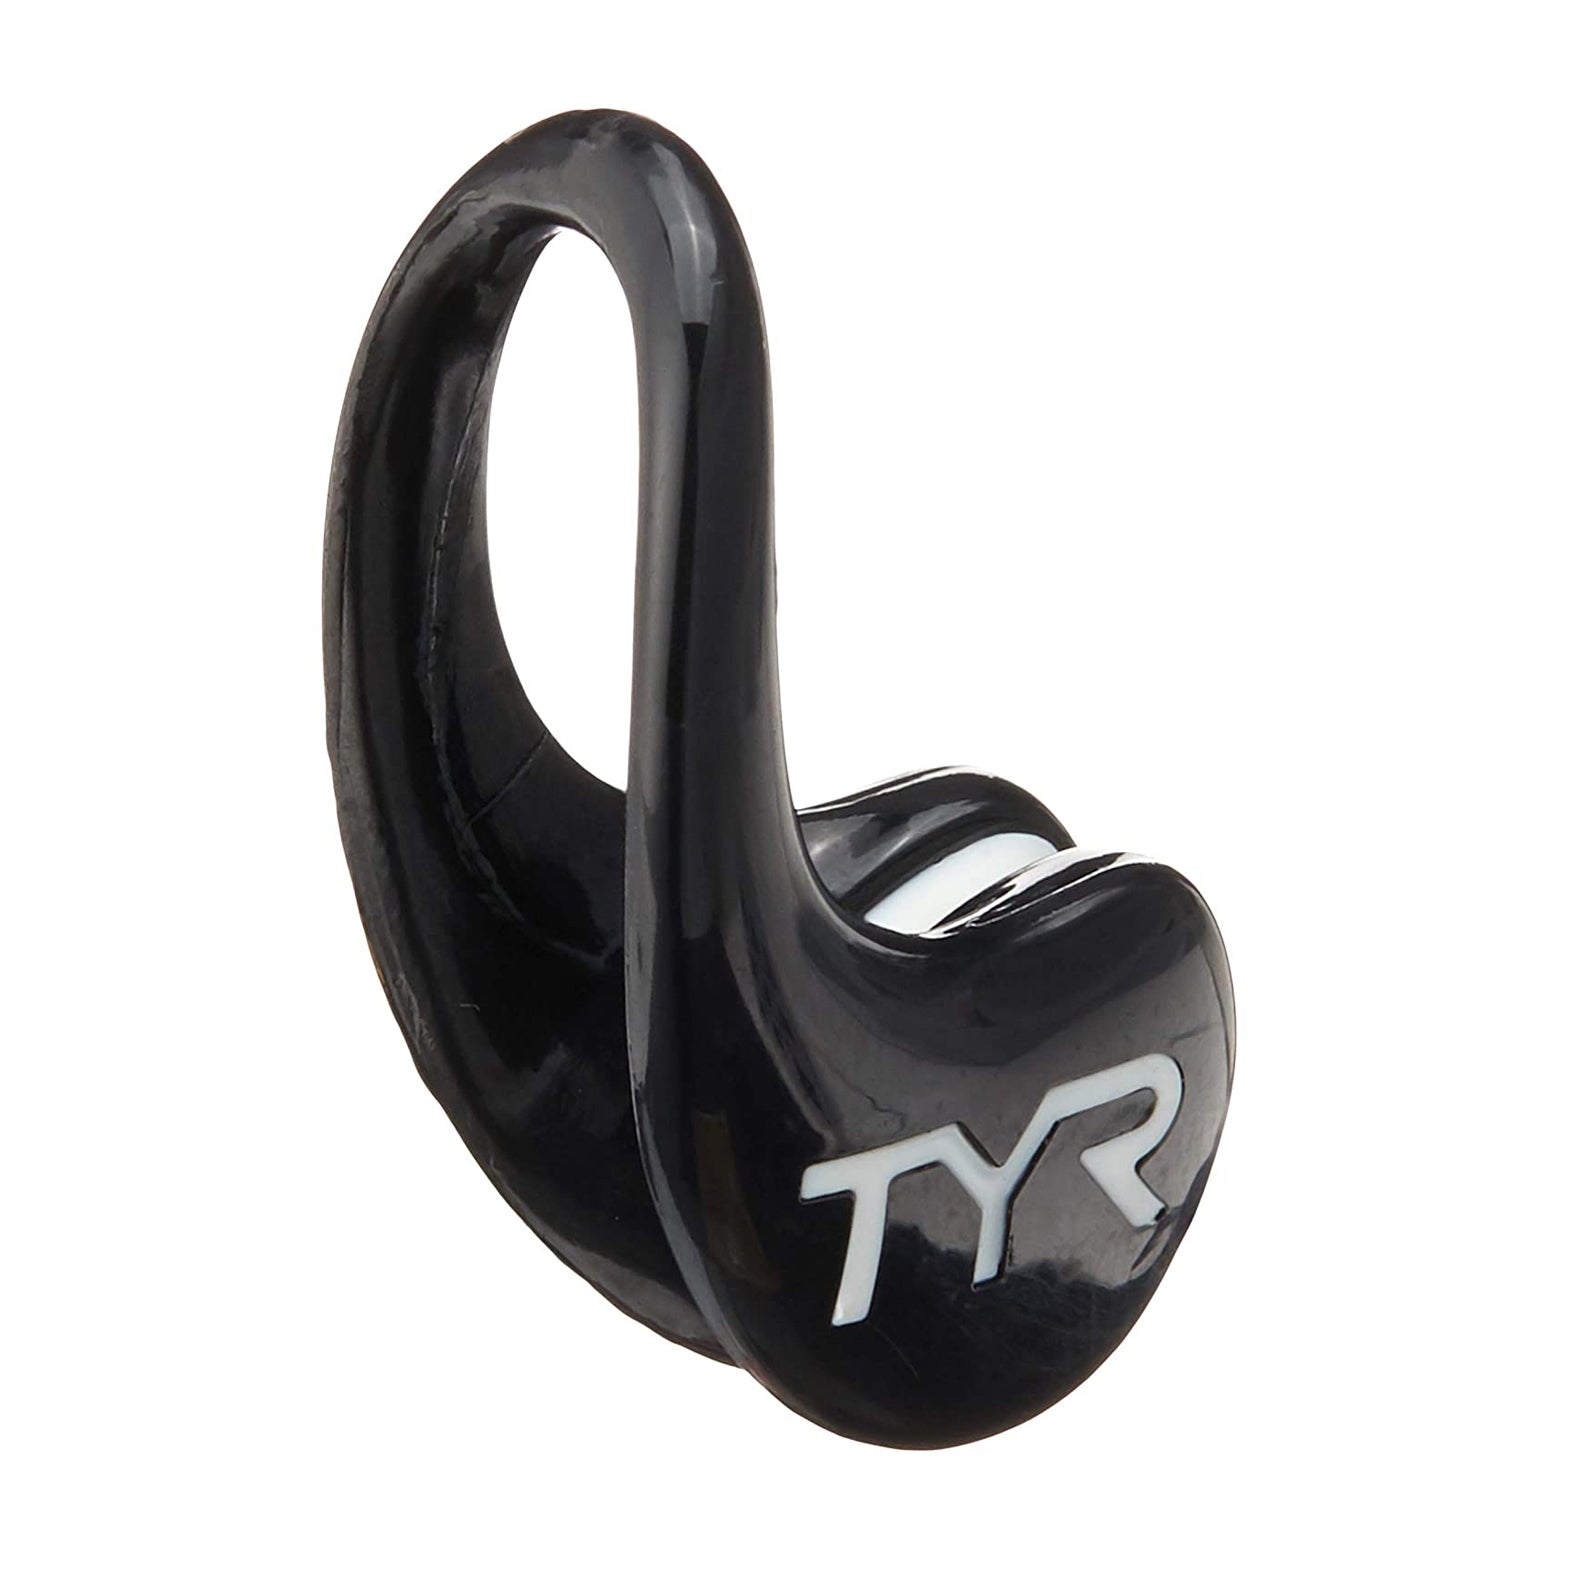 Tyr Ergo Nose Clip, One Size - Best Price online Prokicksports.com